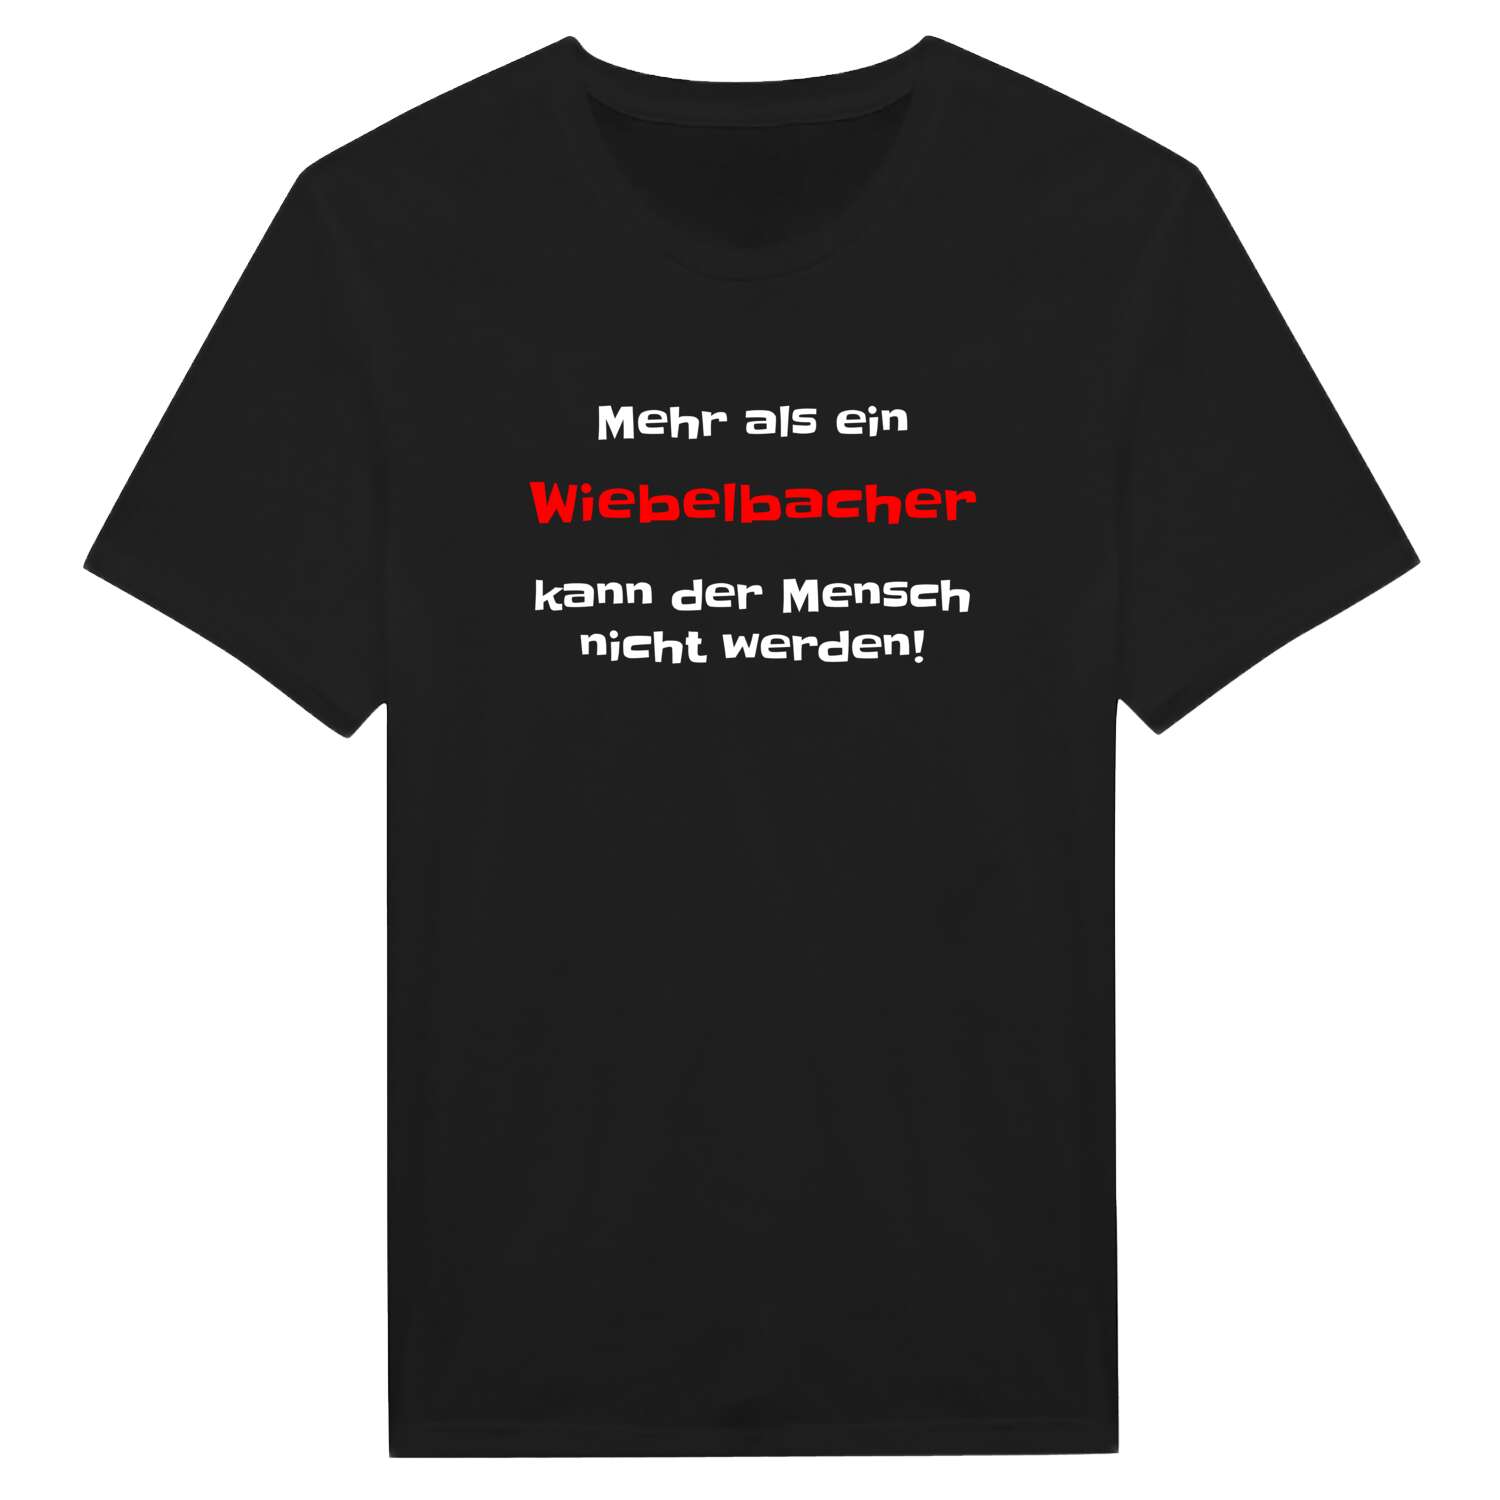 Wiebelbach T-Shirt »Mehr als ein«